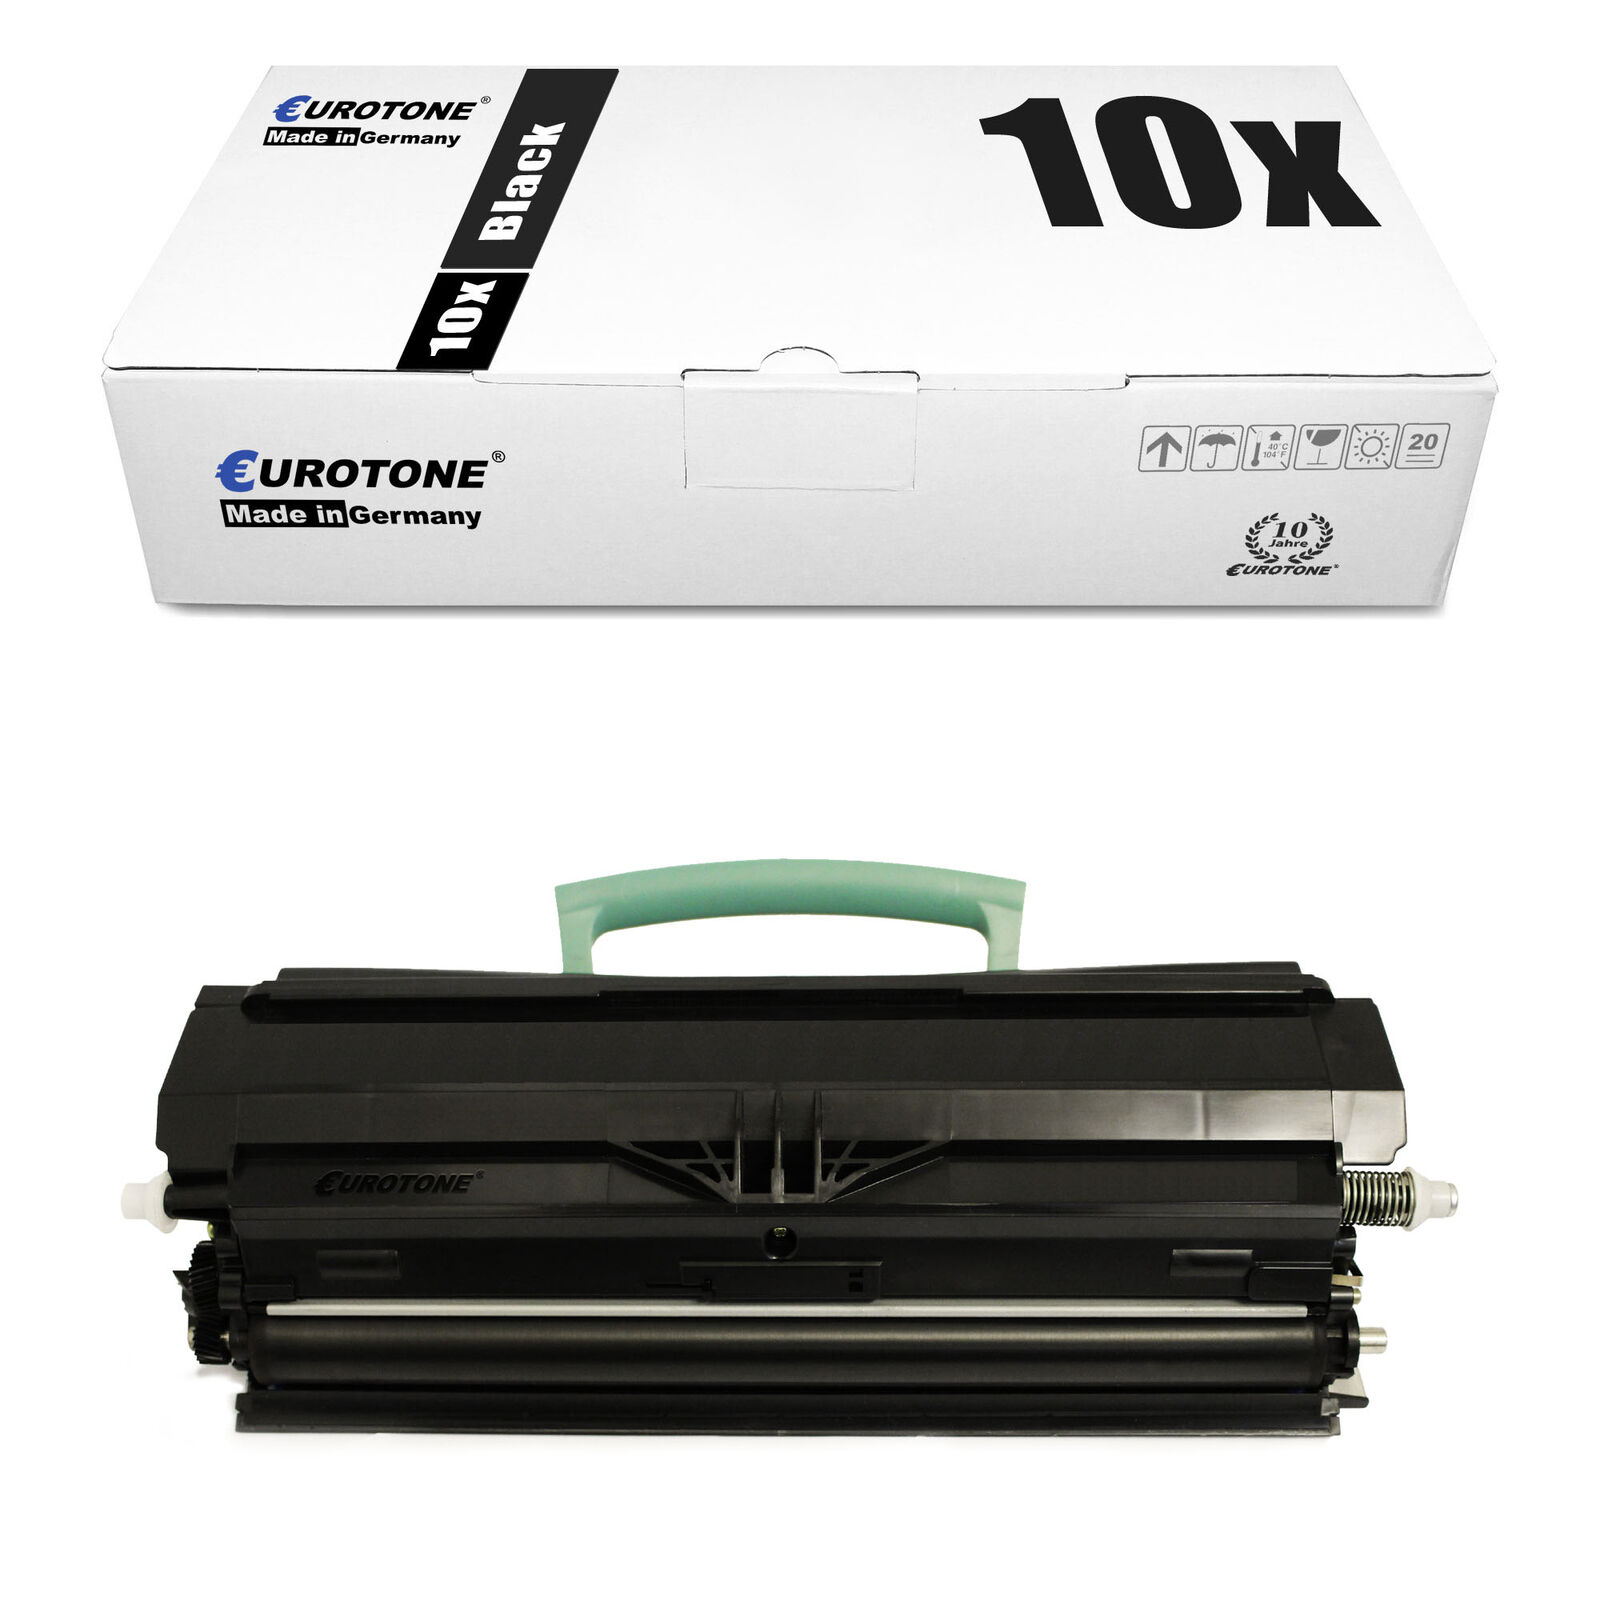 10x Eco Cartridge for Lexmark E-250-N E-350-DN E-350-D E-352-DN E-250-DN E-250-D